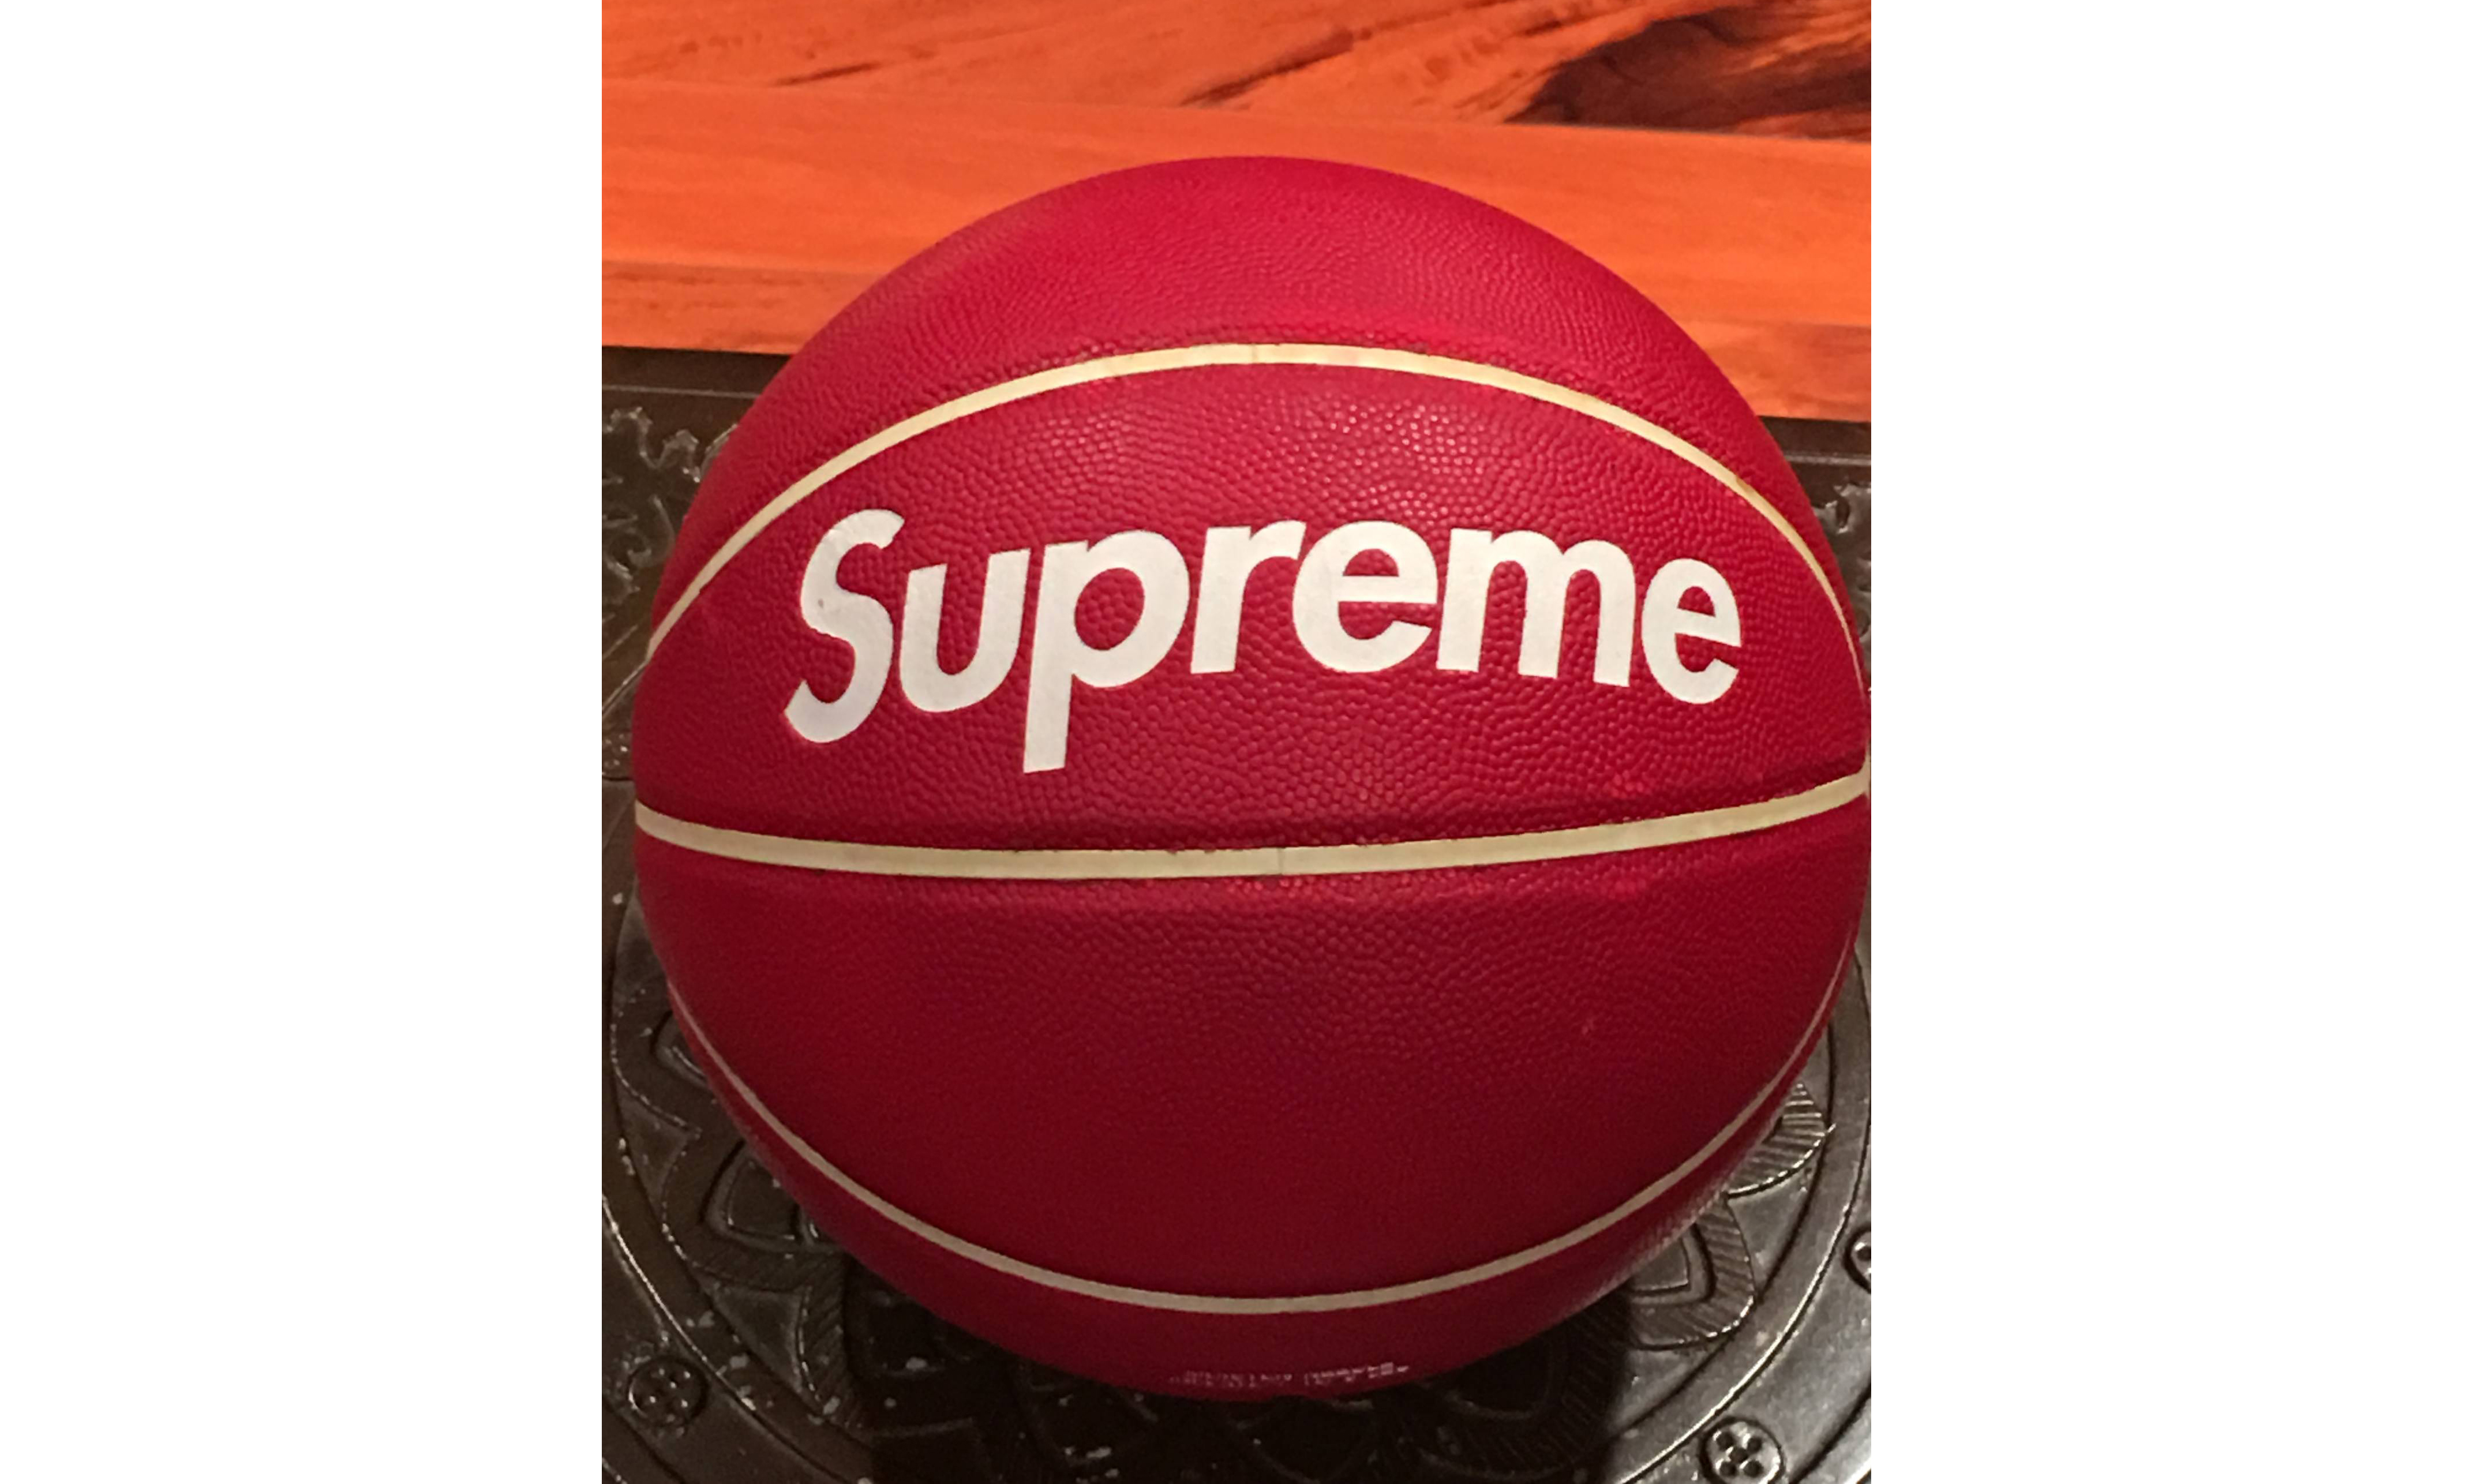 这颗 Supreme x 斯伯丁联名篮球居然卖 25,000 美元？